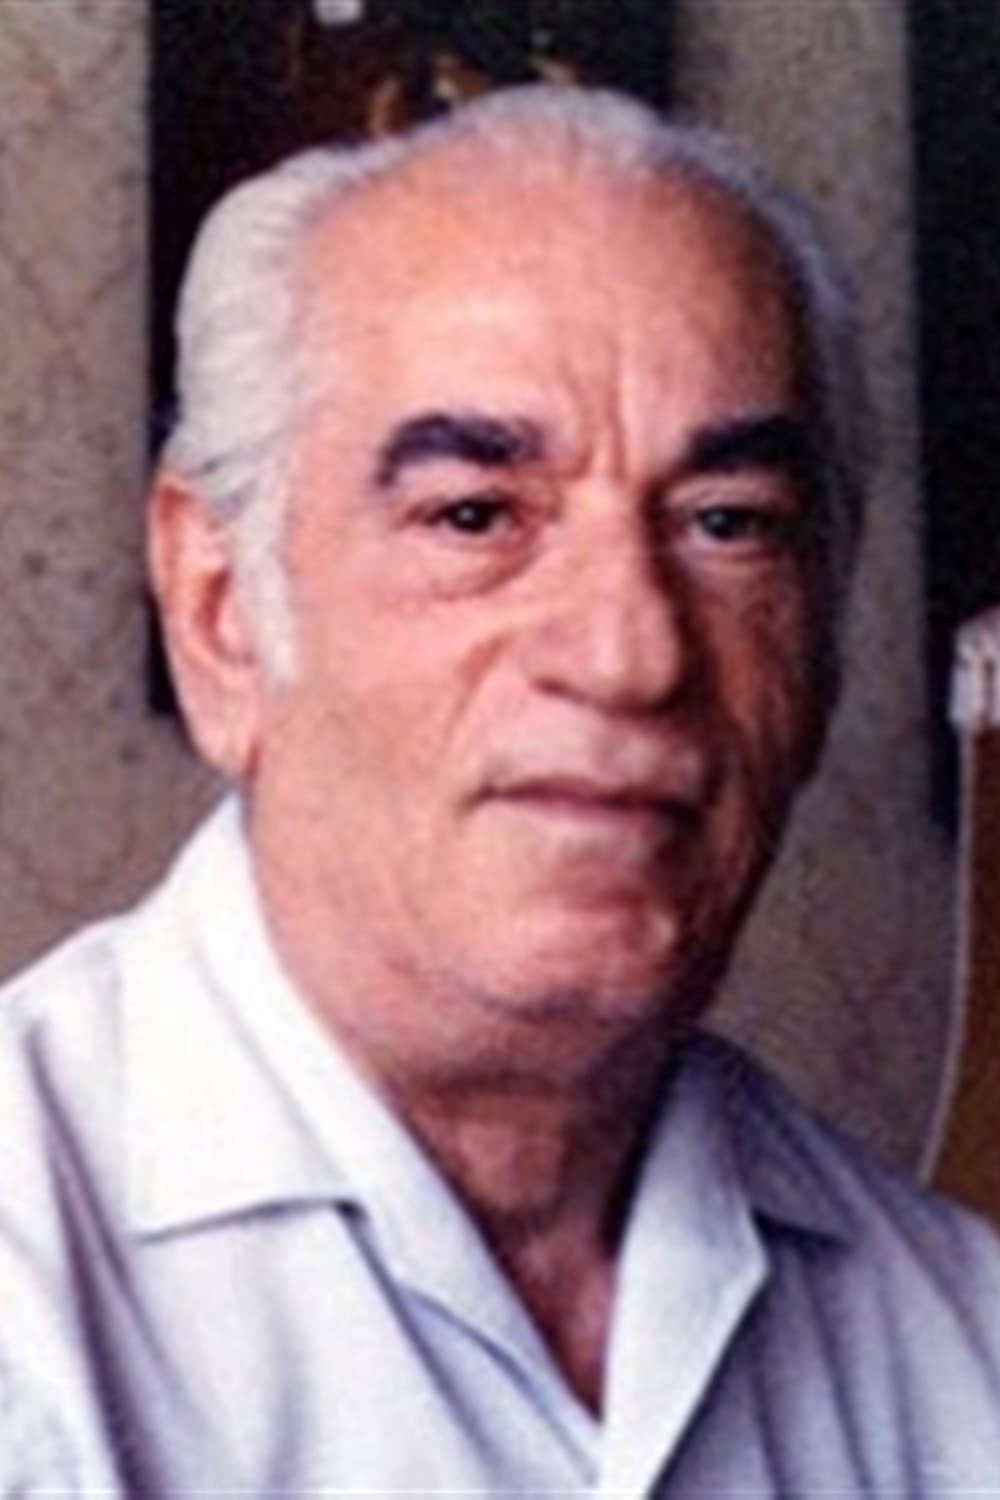 Javad Maroufi